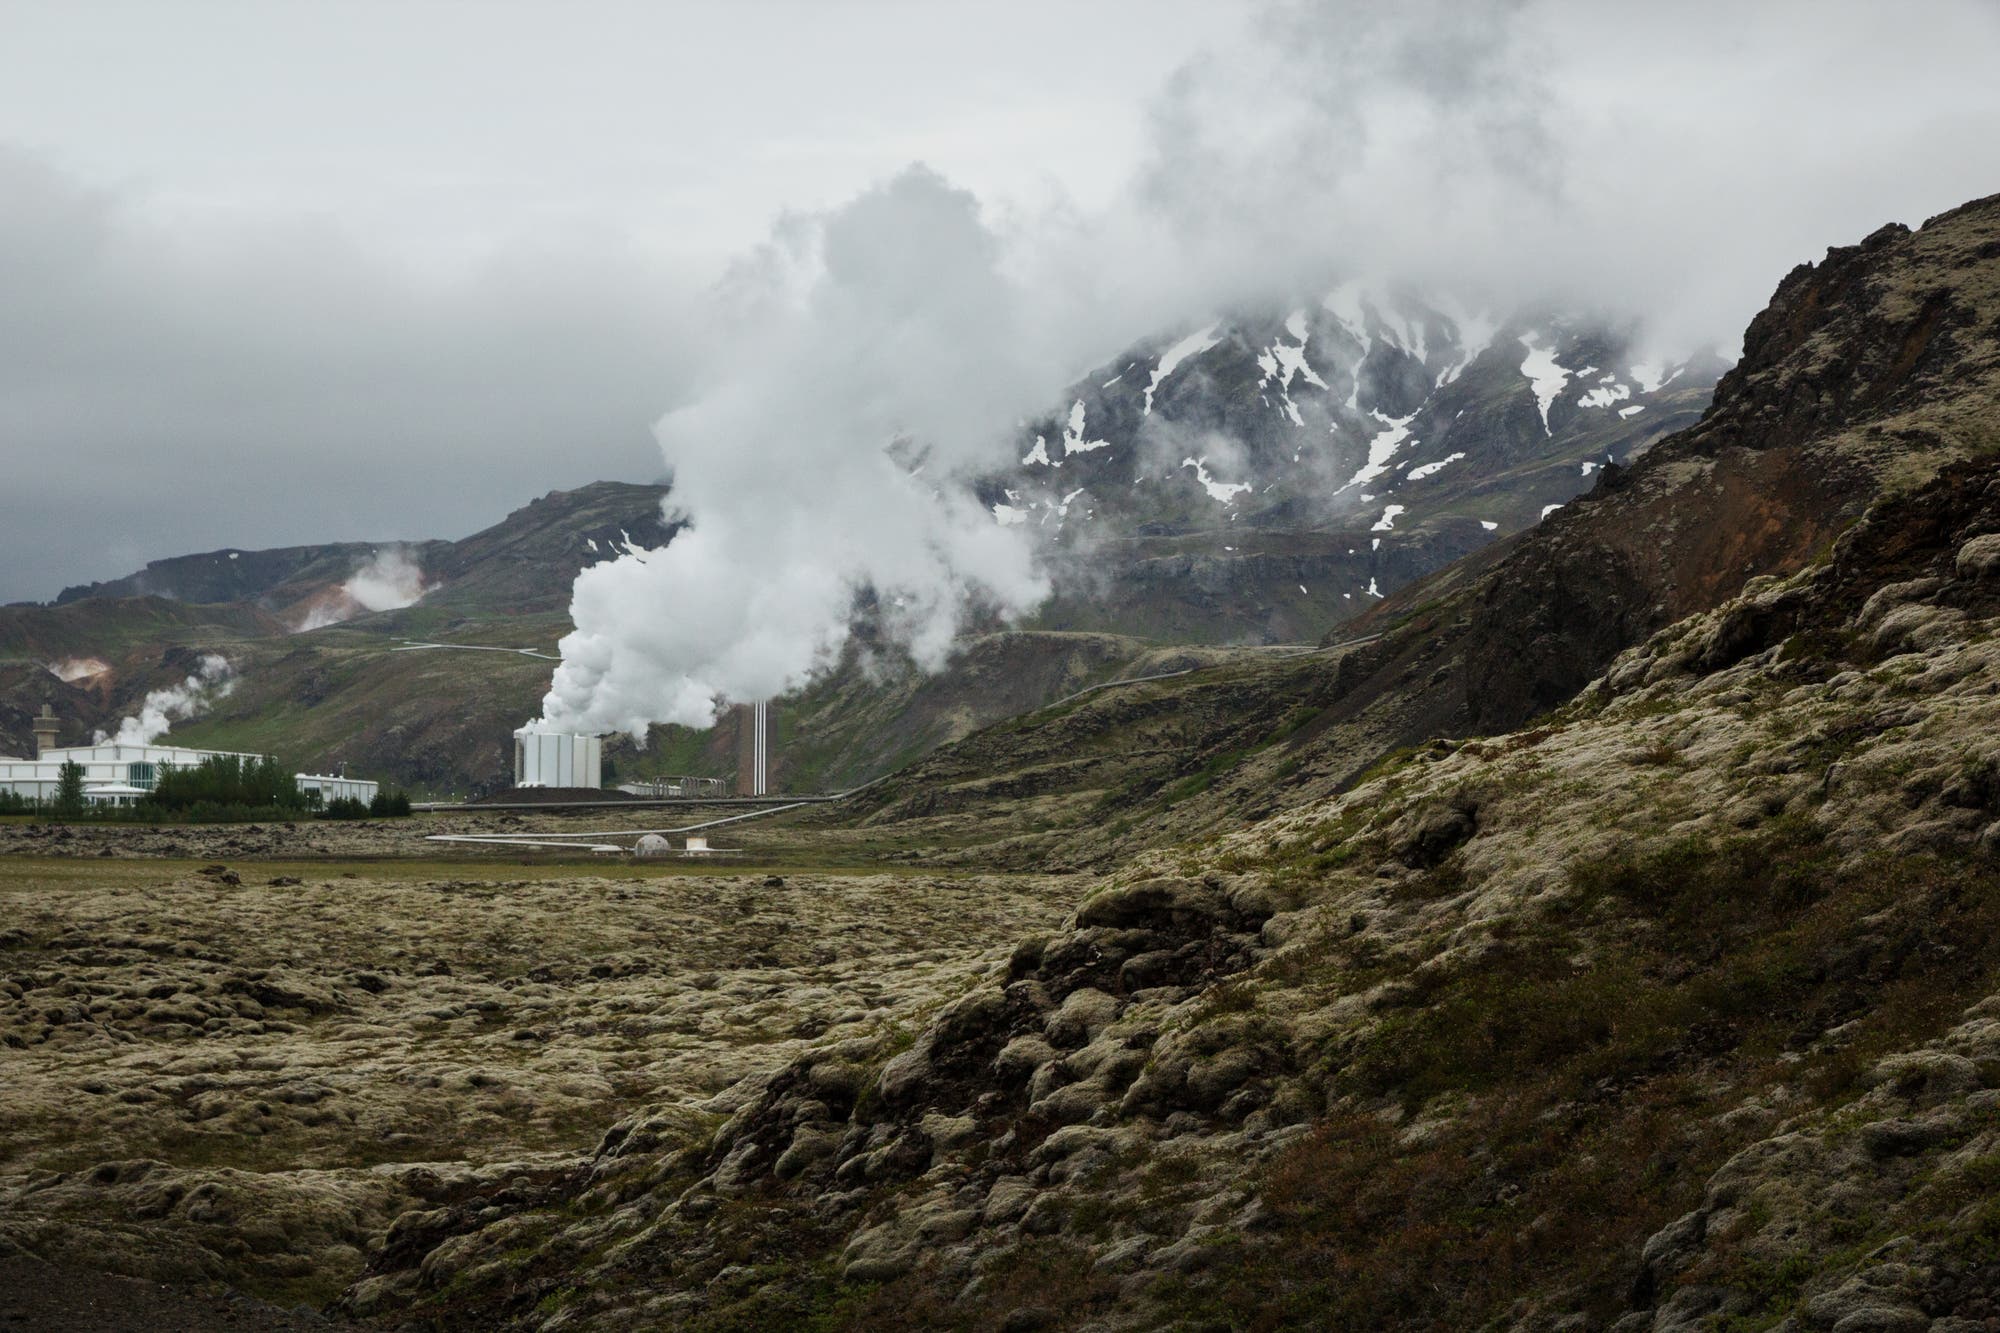 Isländische Landschaft mit dampfendem Erdwärmekraftwerk im Zentrum